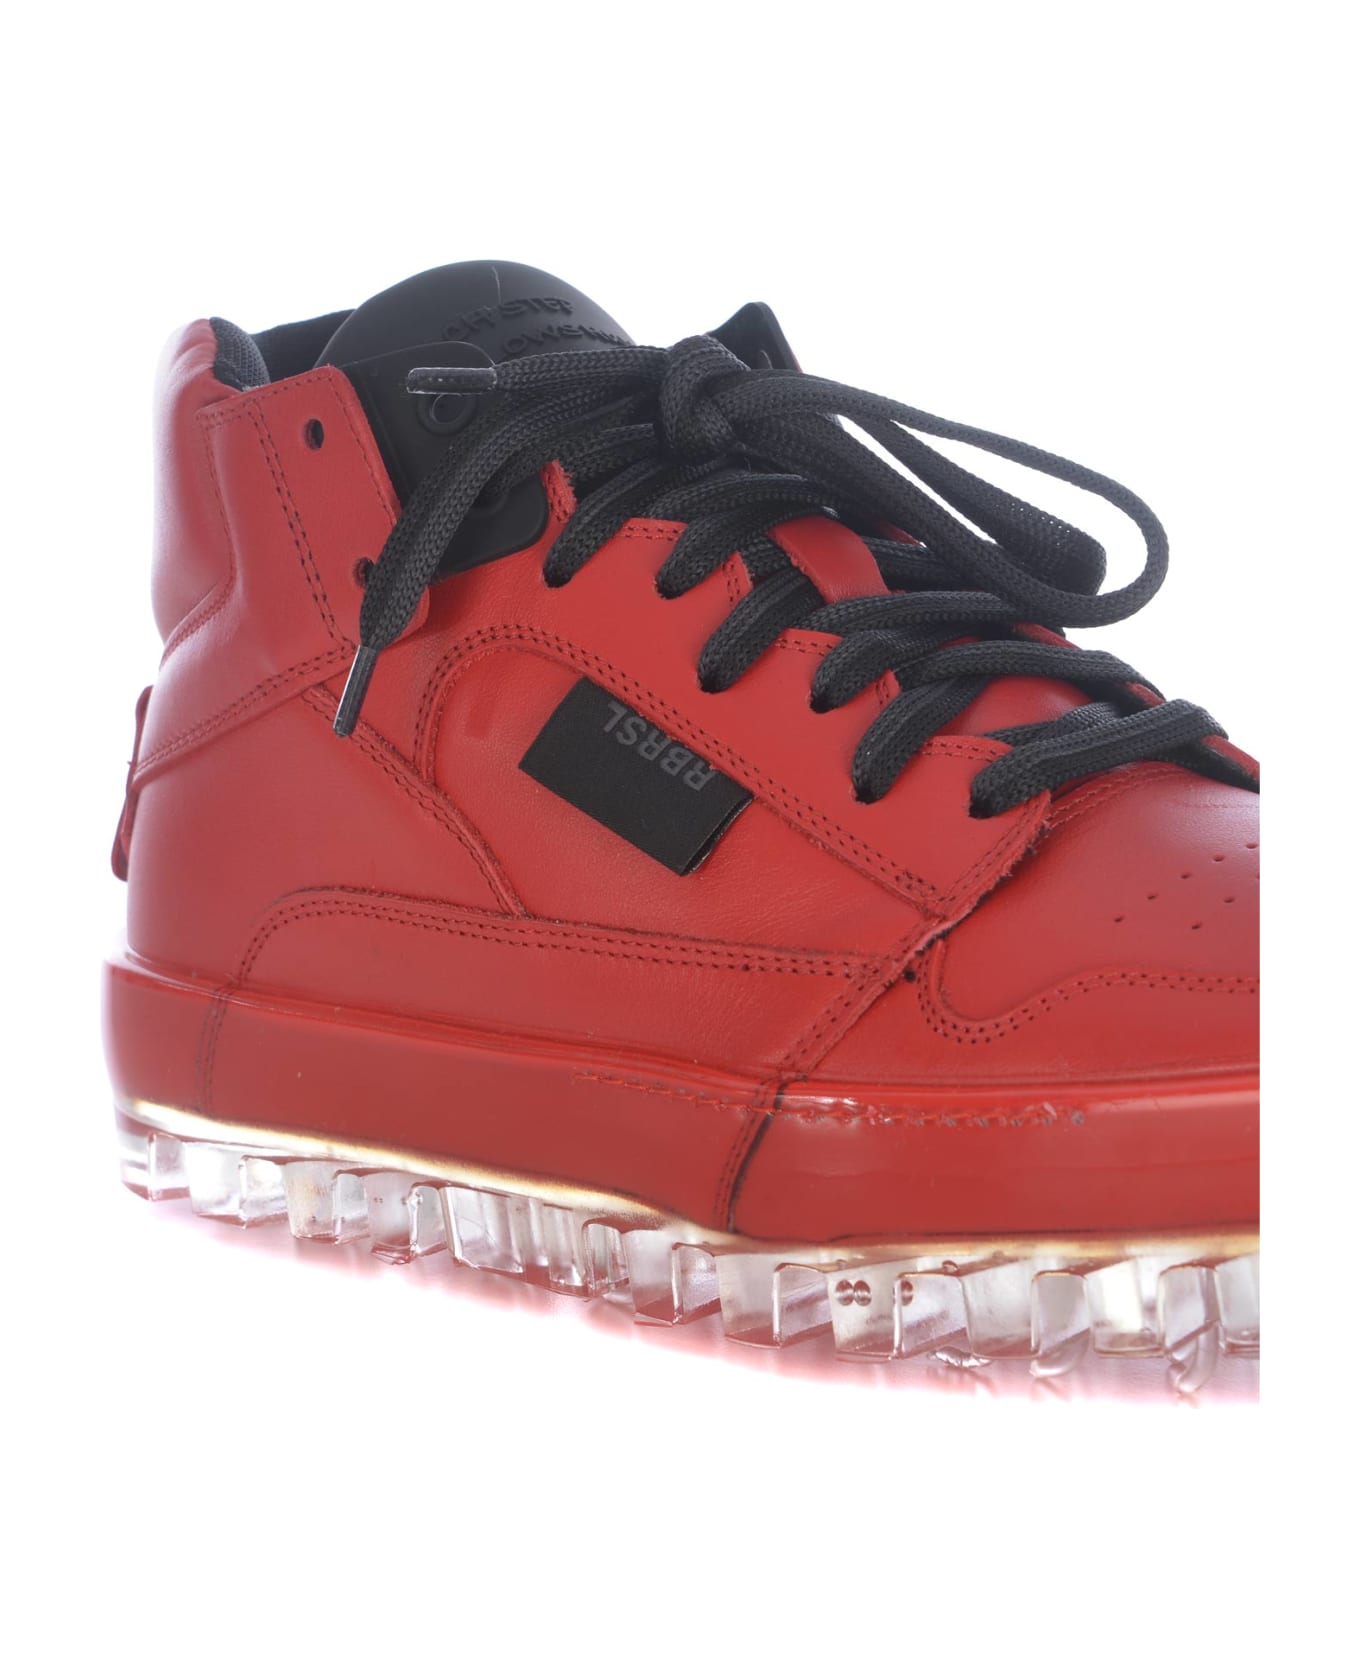 RBRSL Rubber Soul Sneakers Rbrsl In Leather - Rosso